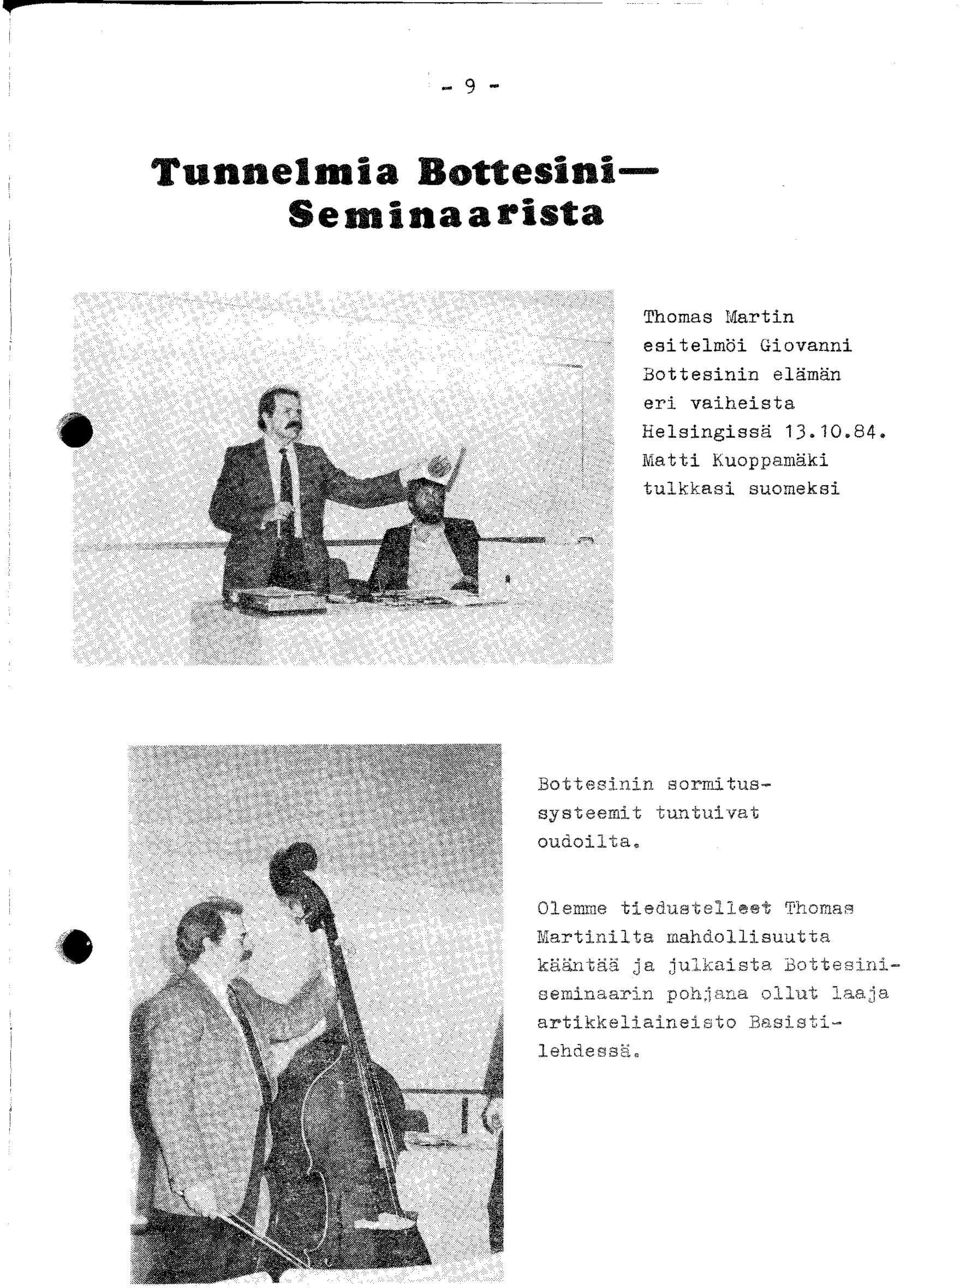 Matti Kuoppamäki tulkkasi suomeksi Bottesinin sormitussysteemit tuntuivat oudoilta.